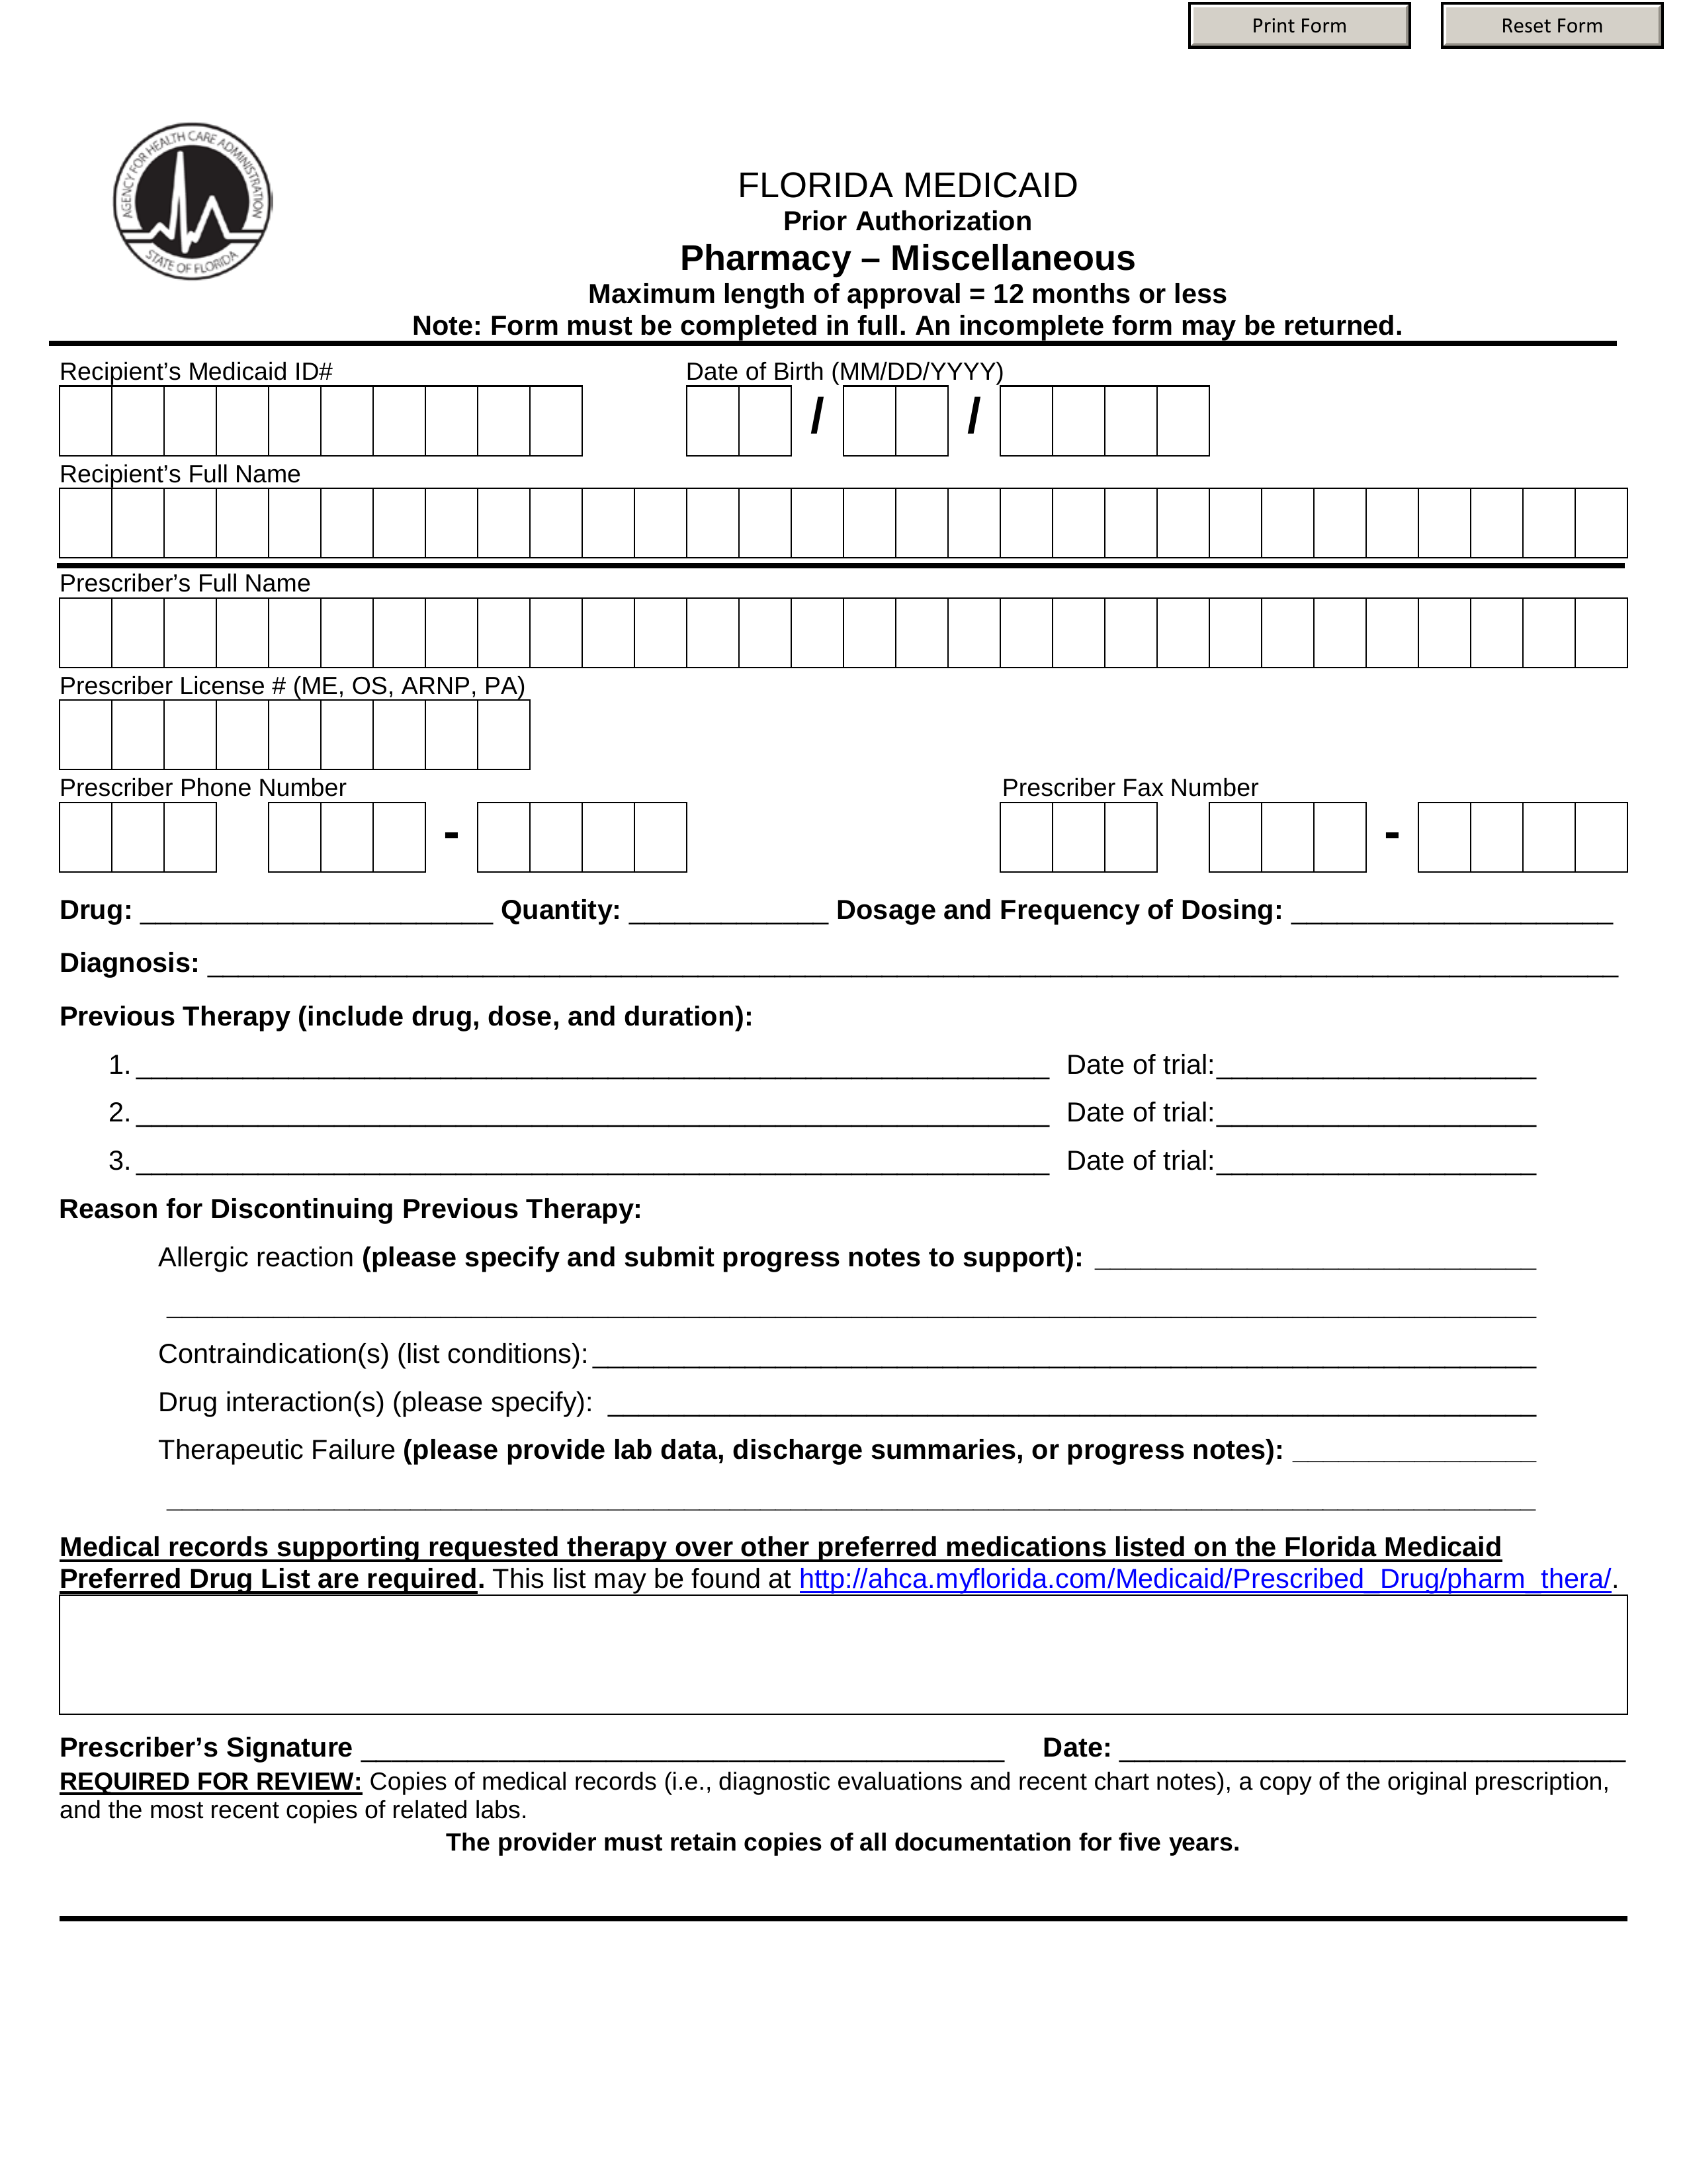 Florida Medicaid Application Printable Printable Application 1754